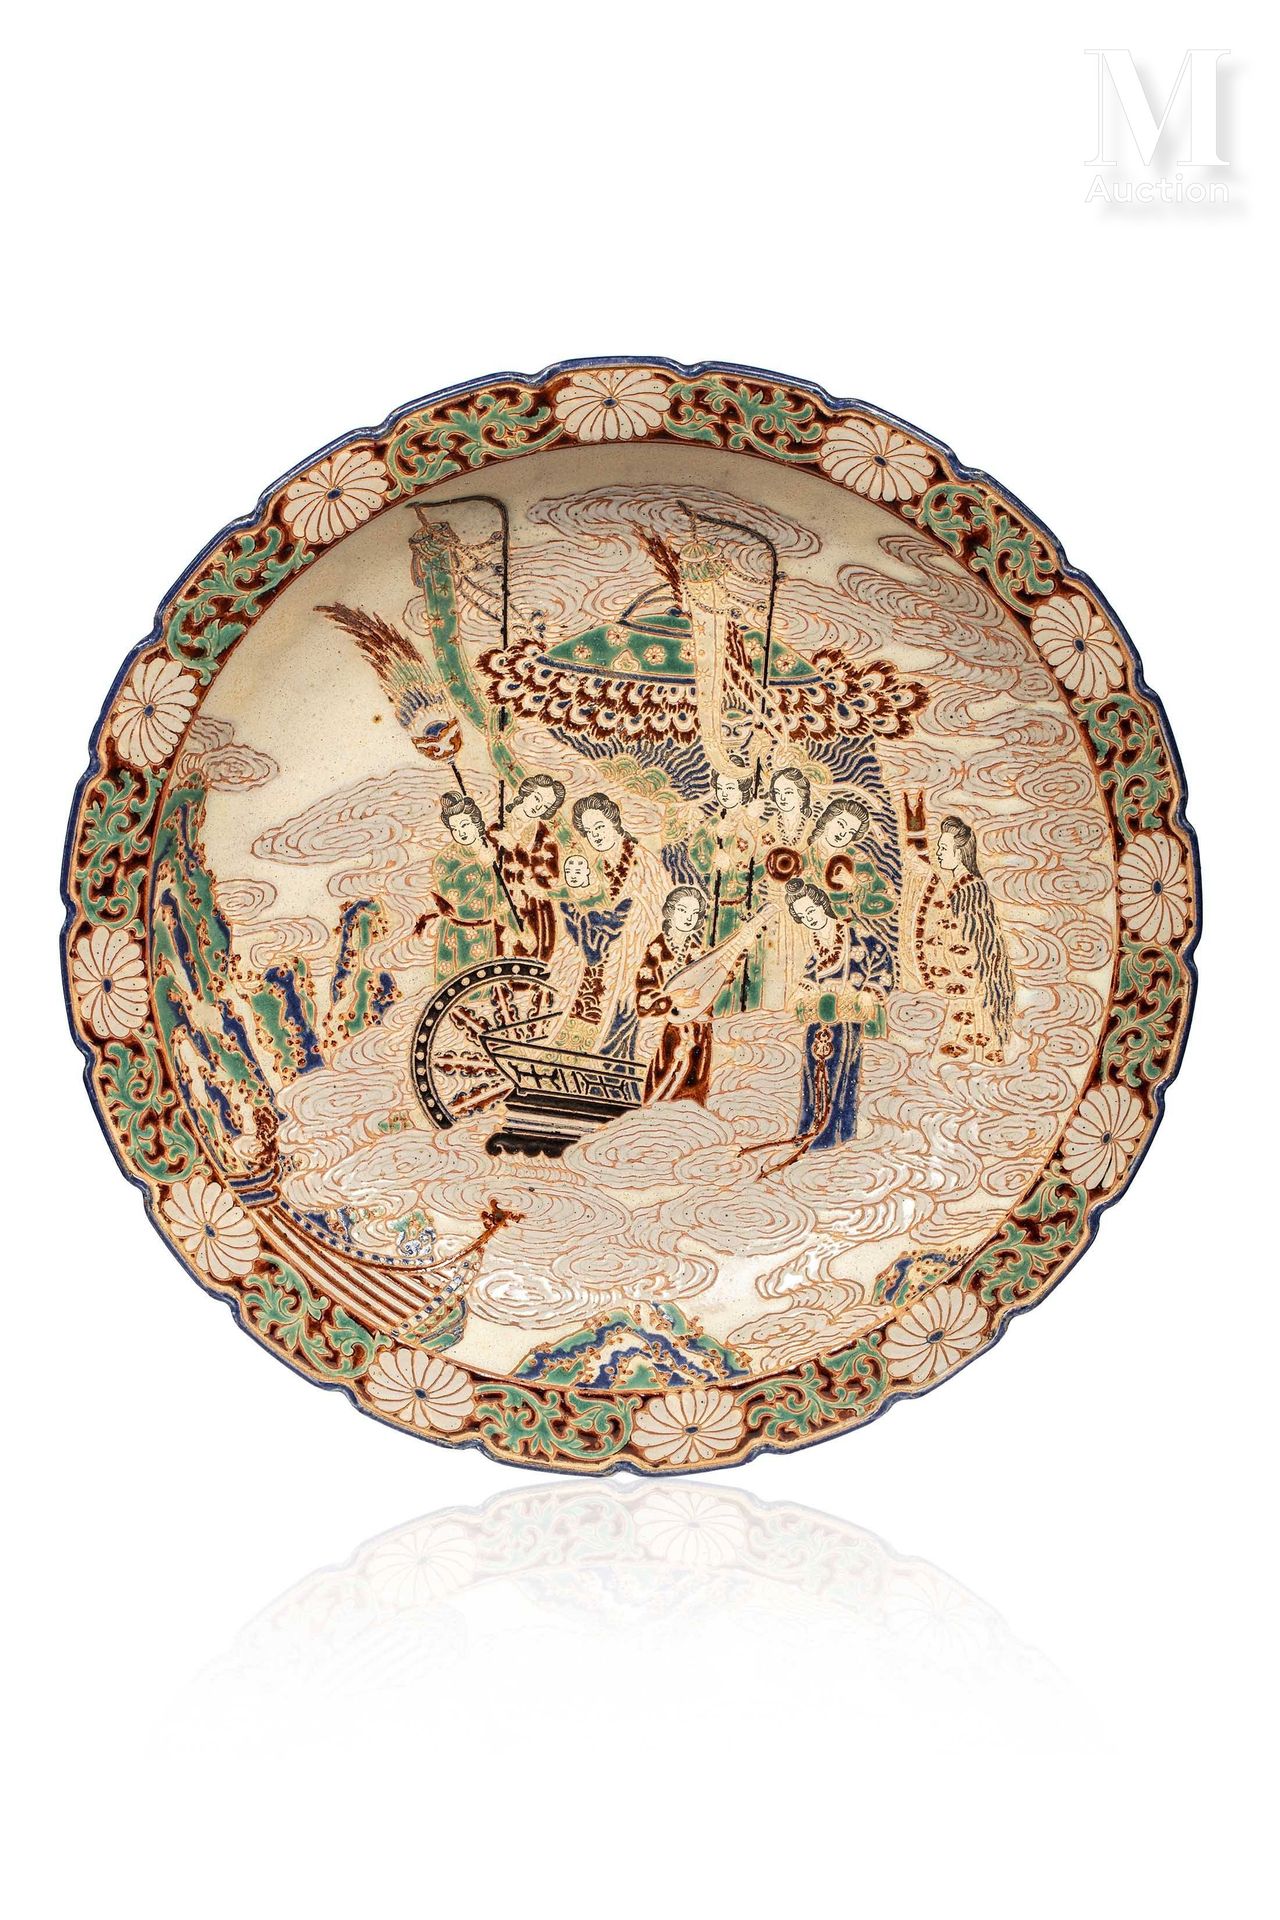 VIETNAM, Ecole de Bien Hoa, XXe siècle, Important plat en céramique decorato con&hellip;